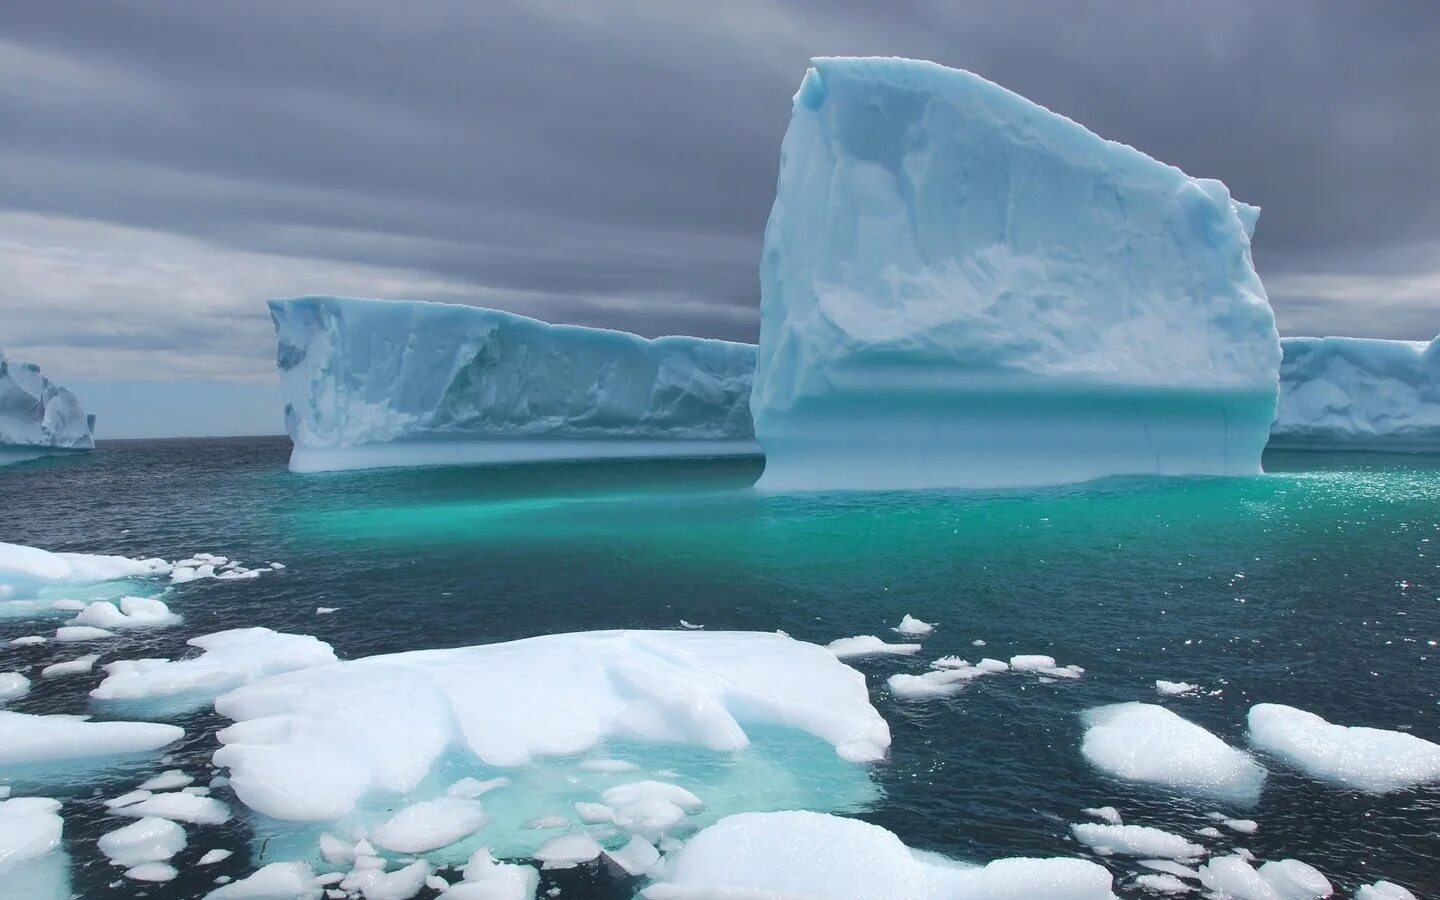 Арктика Северный Ледовитый океан. Северный полюс Северный Ледовитый океан. Ледовитый океан Айсберг. Дрейфующие льды в Северном Ледовитом океане.